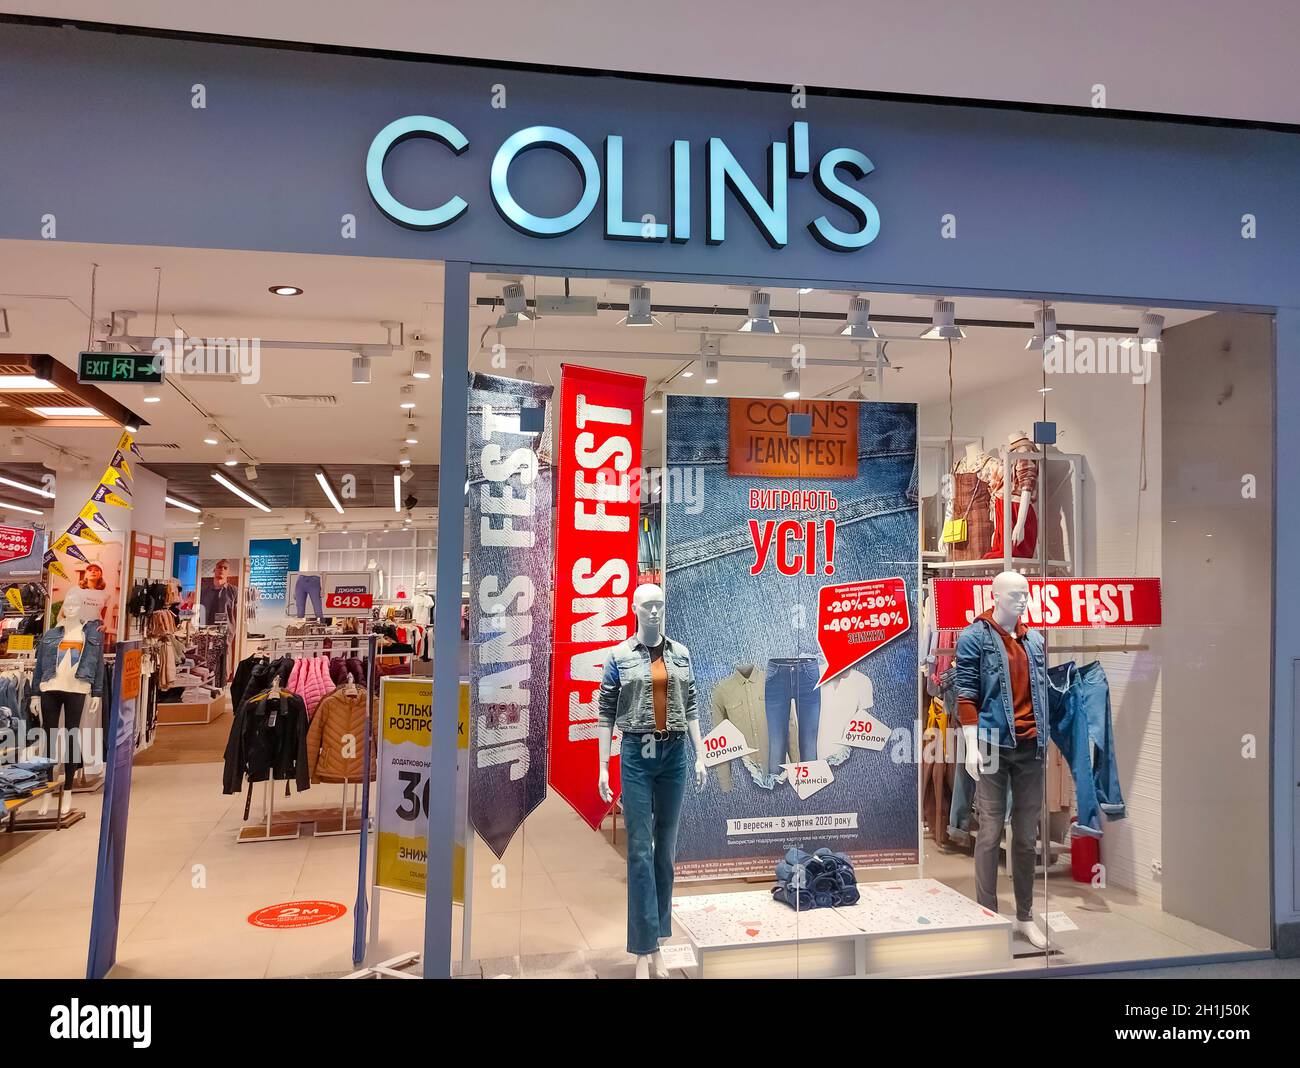 Kiyv, Ukraine - August 2, 2020: Colin's store in a shopping center in Kiyv, Ukraine on August 2, 2020 Stock Photo